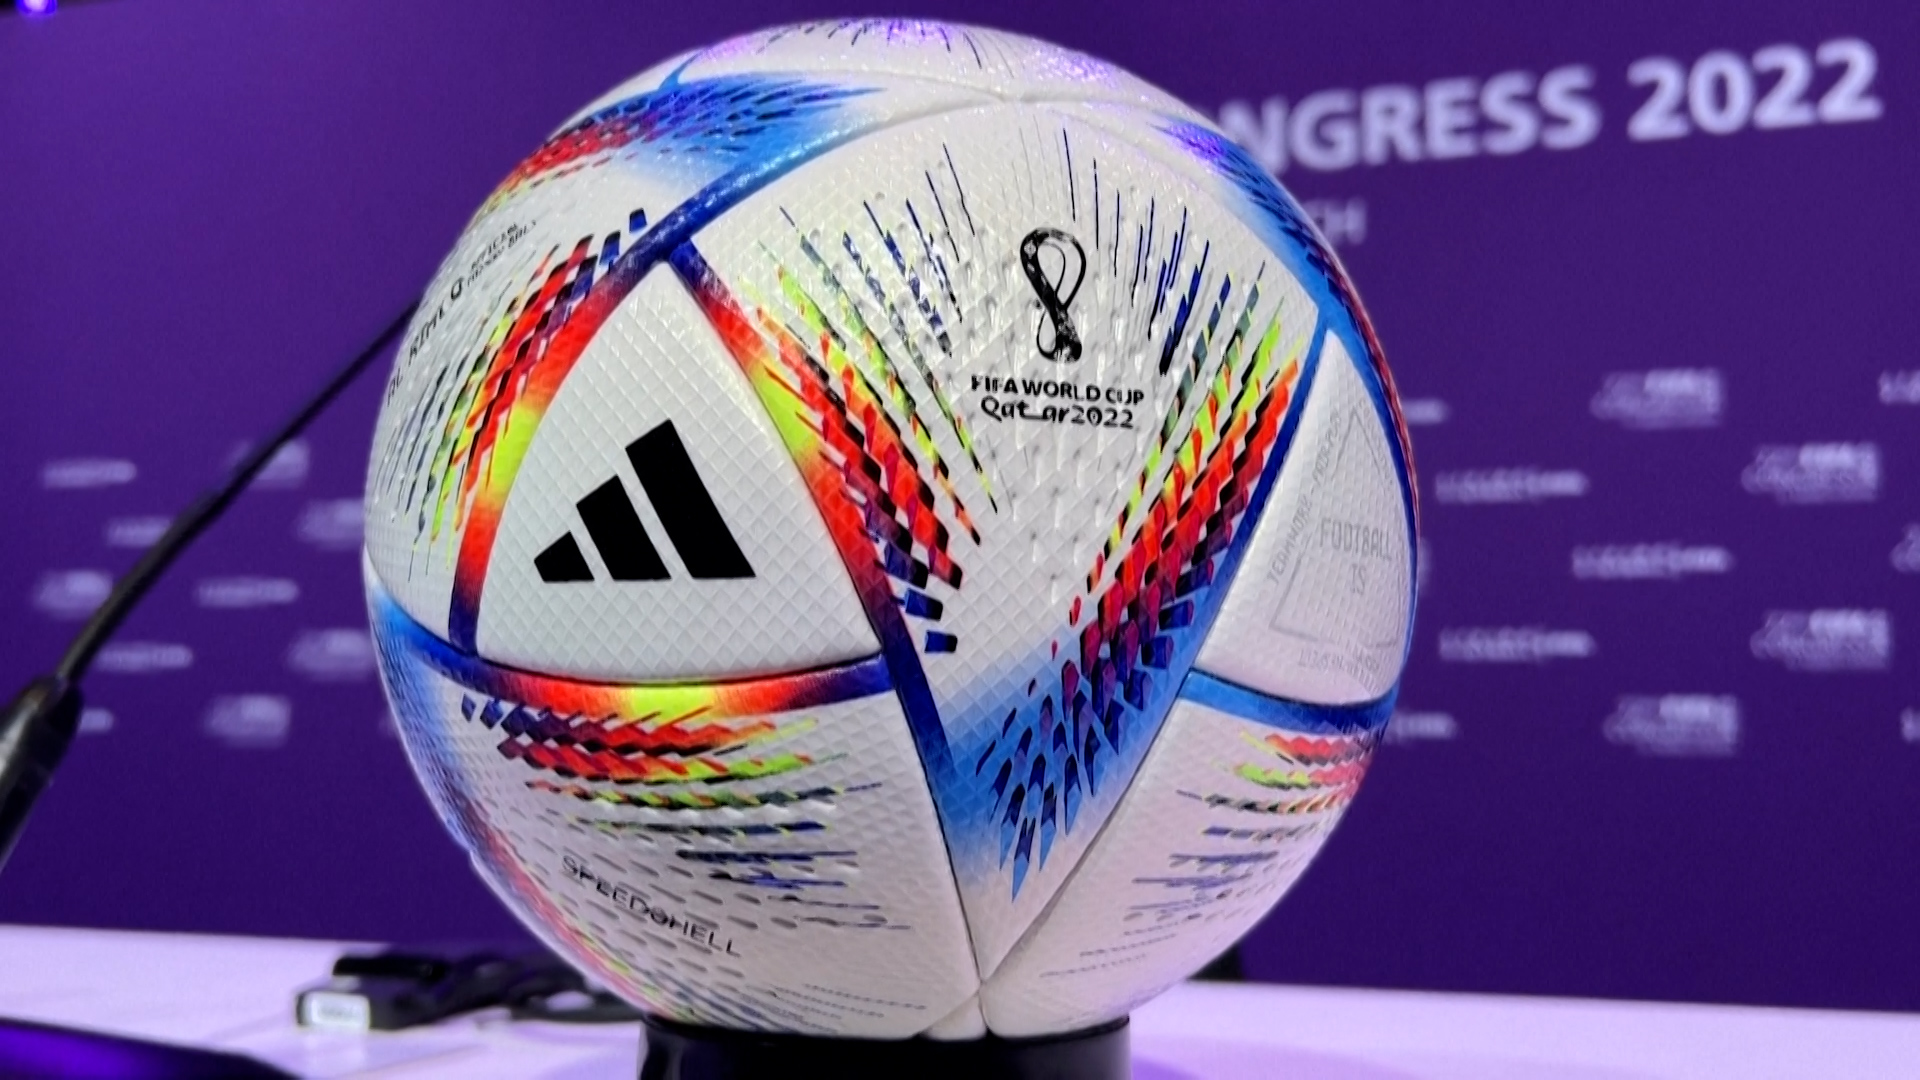 Coupe du monde 2022 : on vous présente Al Rihla, le ballon du Mondial censé  aider les arbitres, mais qui n'évite pas les polémiques